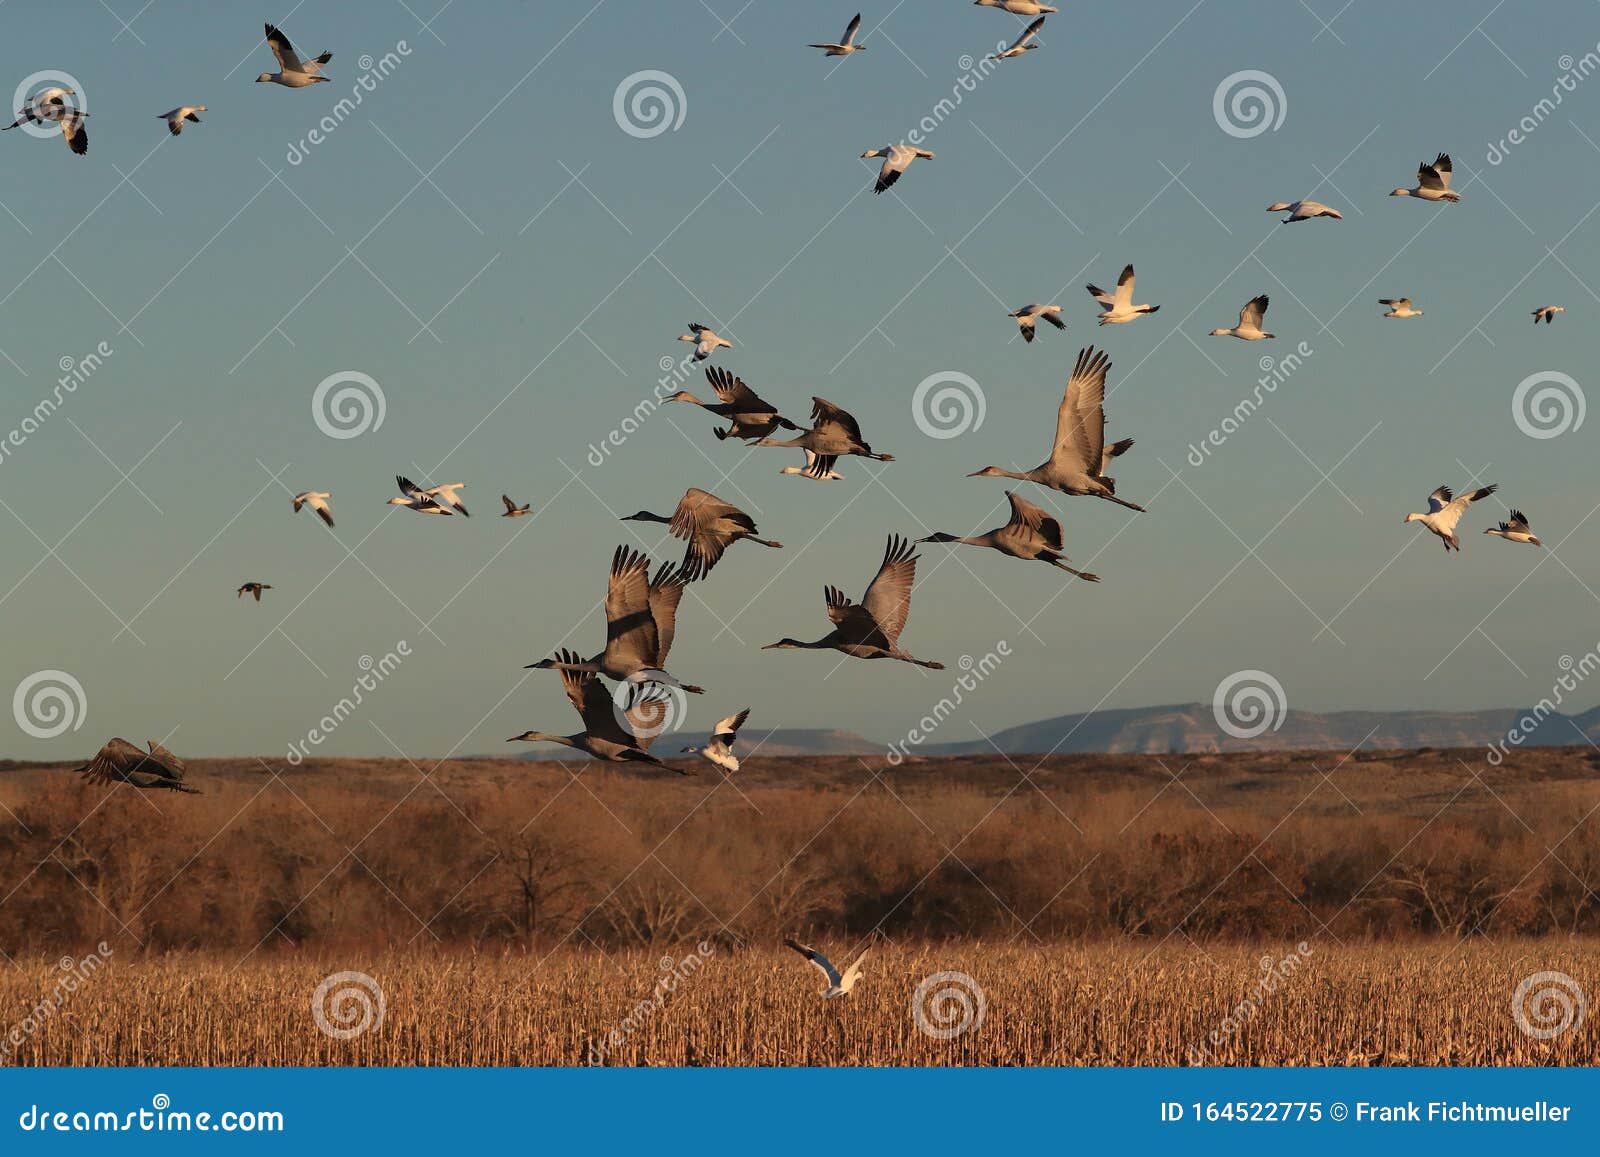 sandhill crane bosque del apache wildlife reserve,new mexico, usa